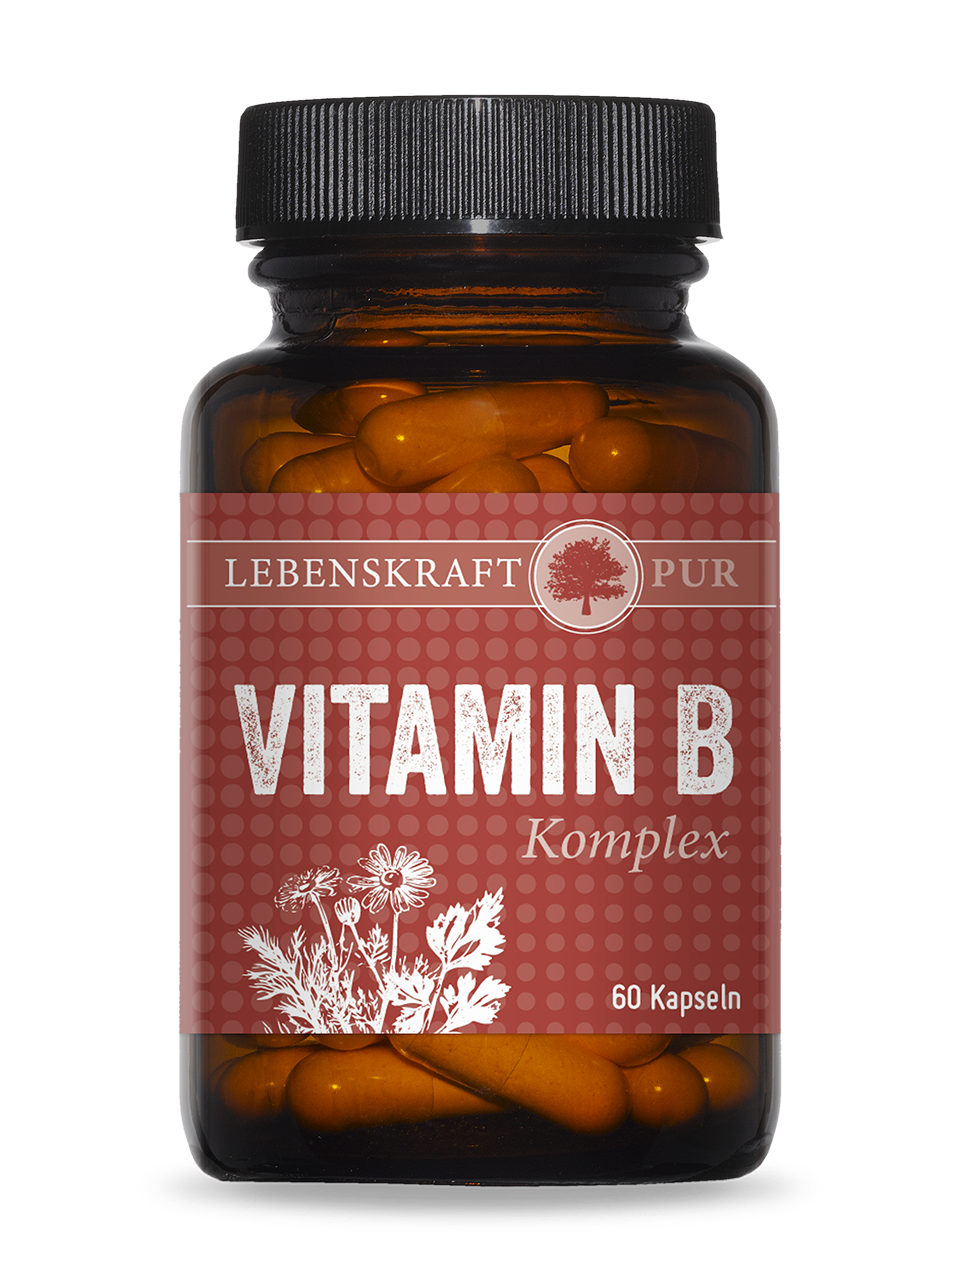 Vitamin B Komplex | Deckt Ihren kompletten Vitamin-B-komplett mit nur 1 Kapsel Der Vitamin B Komplex ist ein vollständiger B-Komplex, bestehend aus einer durchdachten Zusammenstellung von aktiven und proaktiven B-Vitaminen. Vitamine sind organische Verbindungen, die Ihr Körper zum Leben braucht, aber nicht selbst herstellen kann. Sie müssen sie täglich mit der Nahrung zuführen. Einige Vitamine führen Sie als Vorstufe (Provitamin) zu. In Ihrem Körper werden sie dann zur „aktiven“ Form umgebaut, dass ist die Form, die Ihr Körper zum Arbeiten benötigt.